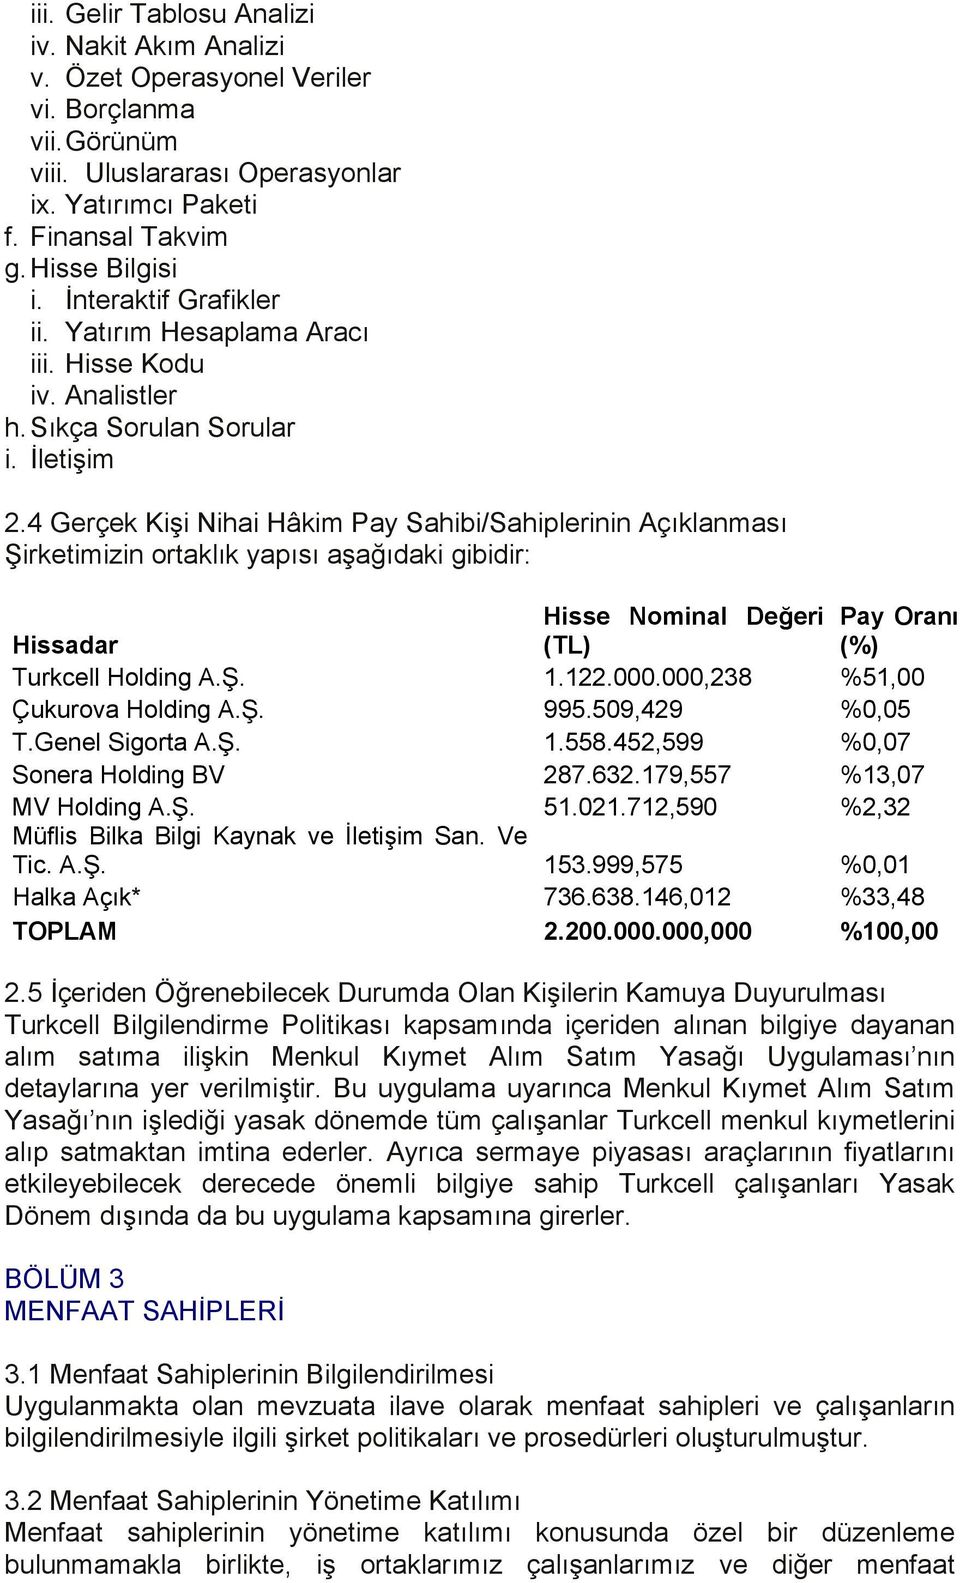 4 Gerçek Kişi Nihai Hâkim Pay Sahibi/Sahiplerinin Açıklanması Şirketimizin ortaklık yapısı aşağıdaki gibidir: Hisse Nominal Değeri Pay Oranı Hissadar (TL) (%) Turkcell Holding A.Ş. 1.122.000.